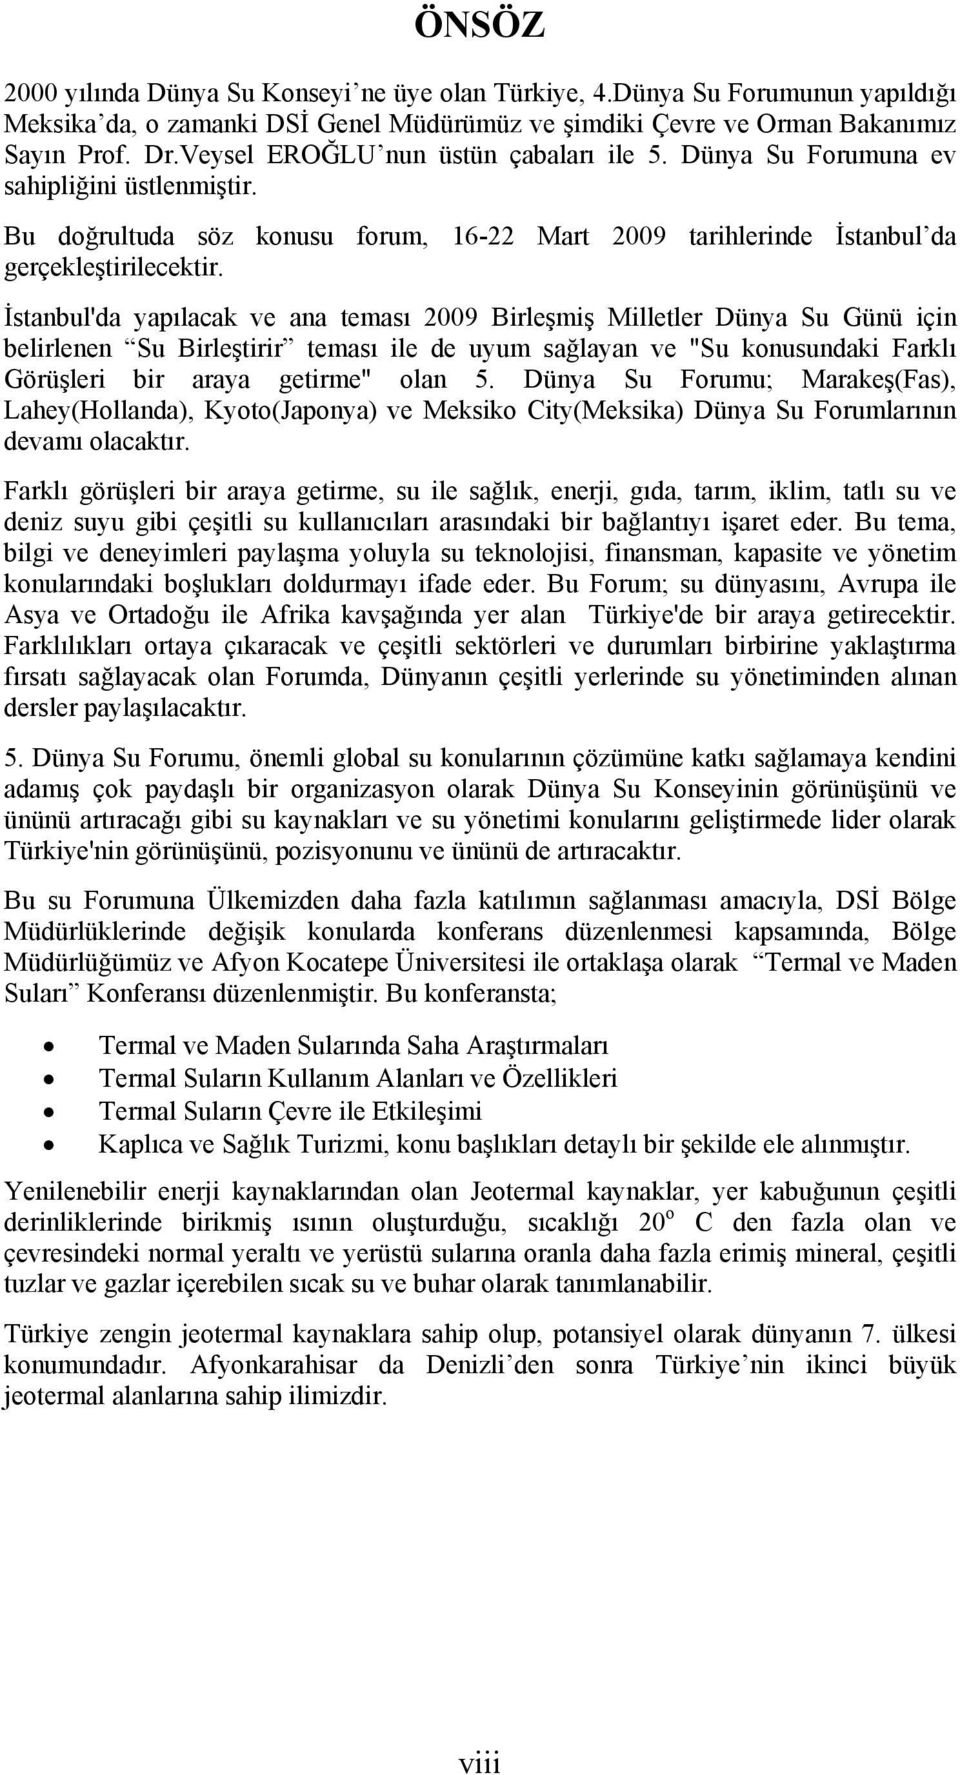 İstanbul'da yapılacak ve ana teması 2009 Birleşmiş Milletler Dünya Su Günü için belirlenen Su Birleştirir teması ile de uyum sağlayan ve "Su konusundaki Farklı Görüşleri bir araya getirme" olan 5.